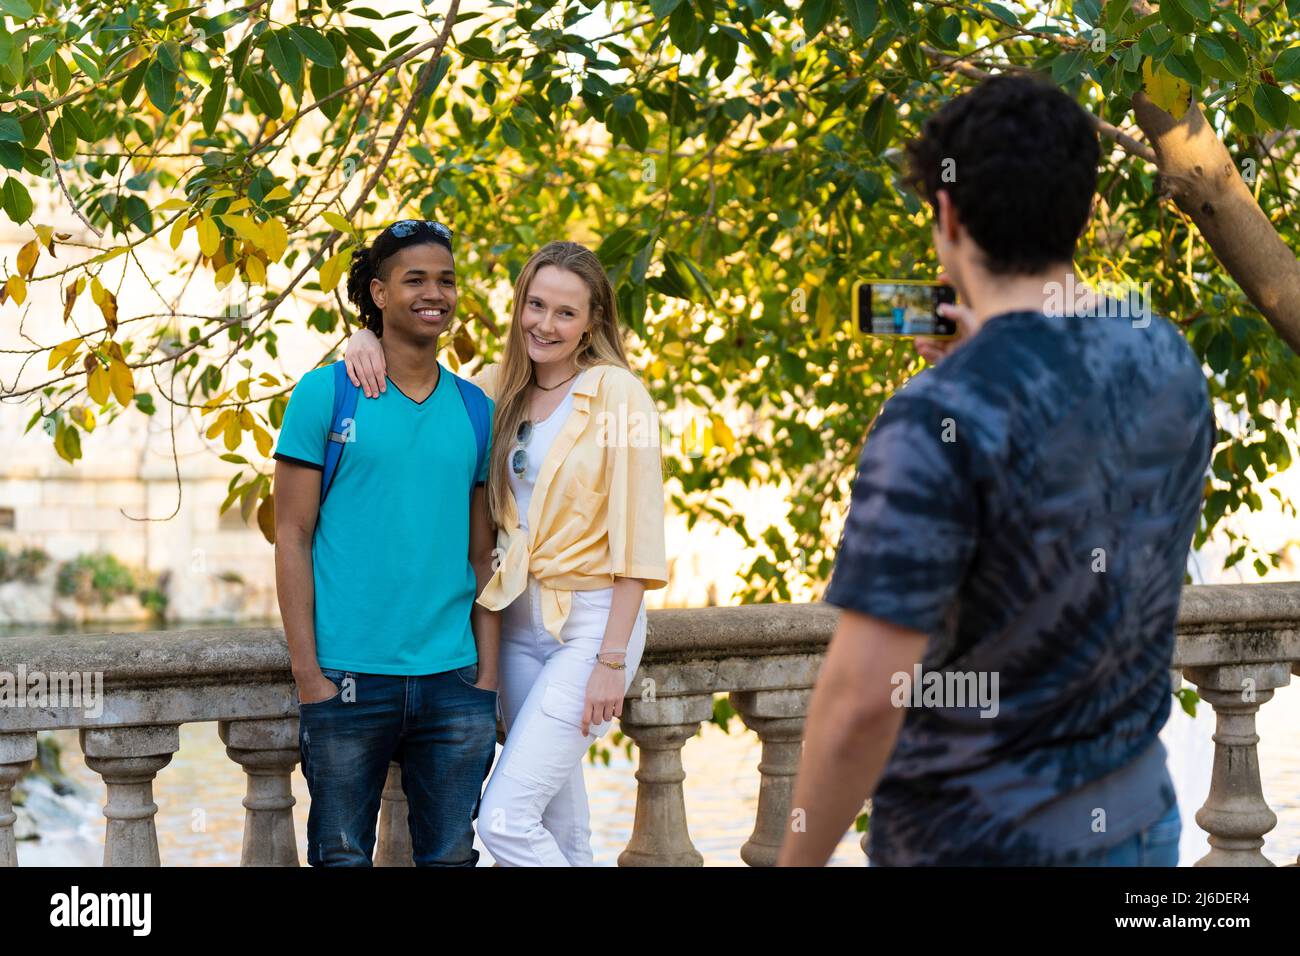 Gruppo di amici adolescenti che scattano una foto durante una gita nel parco Foto Stock